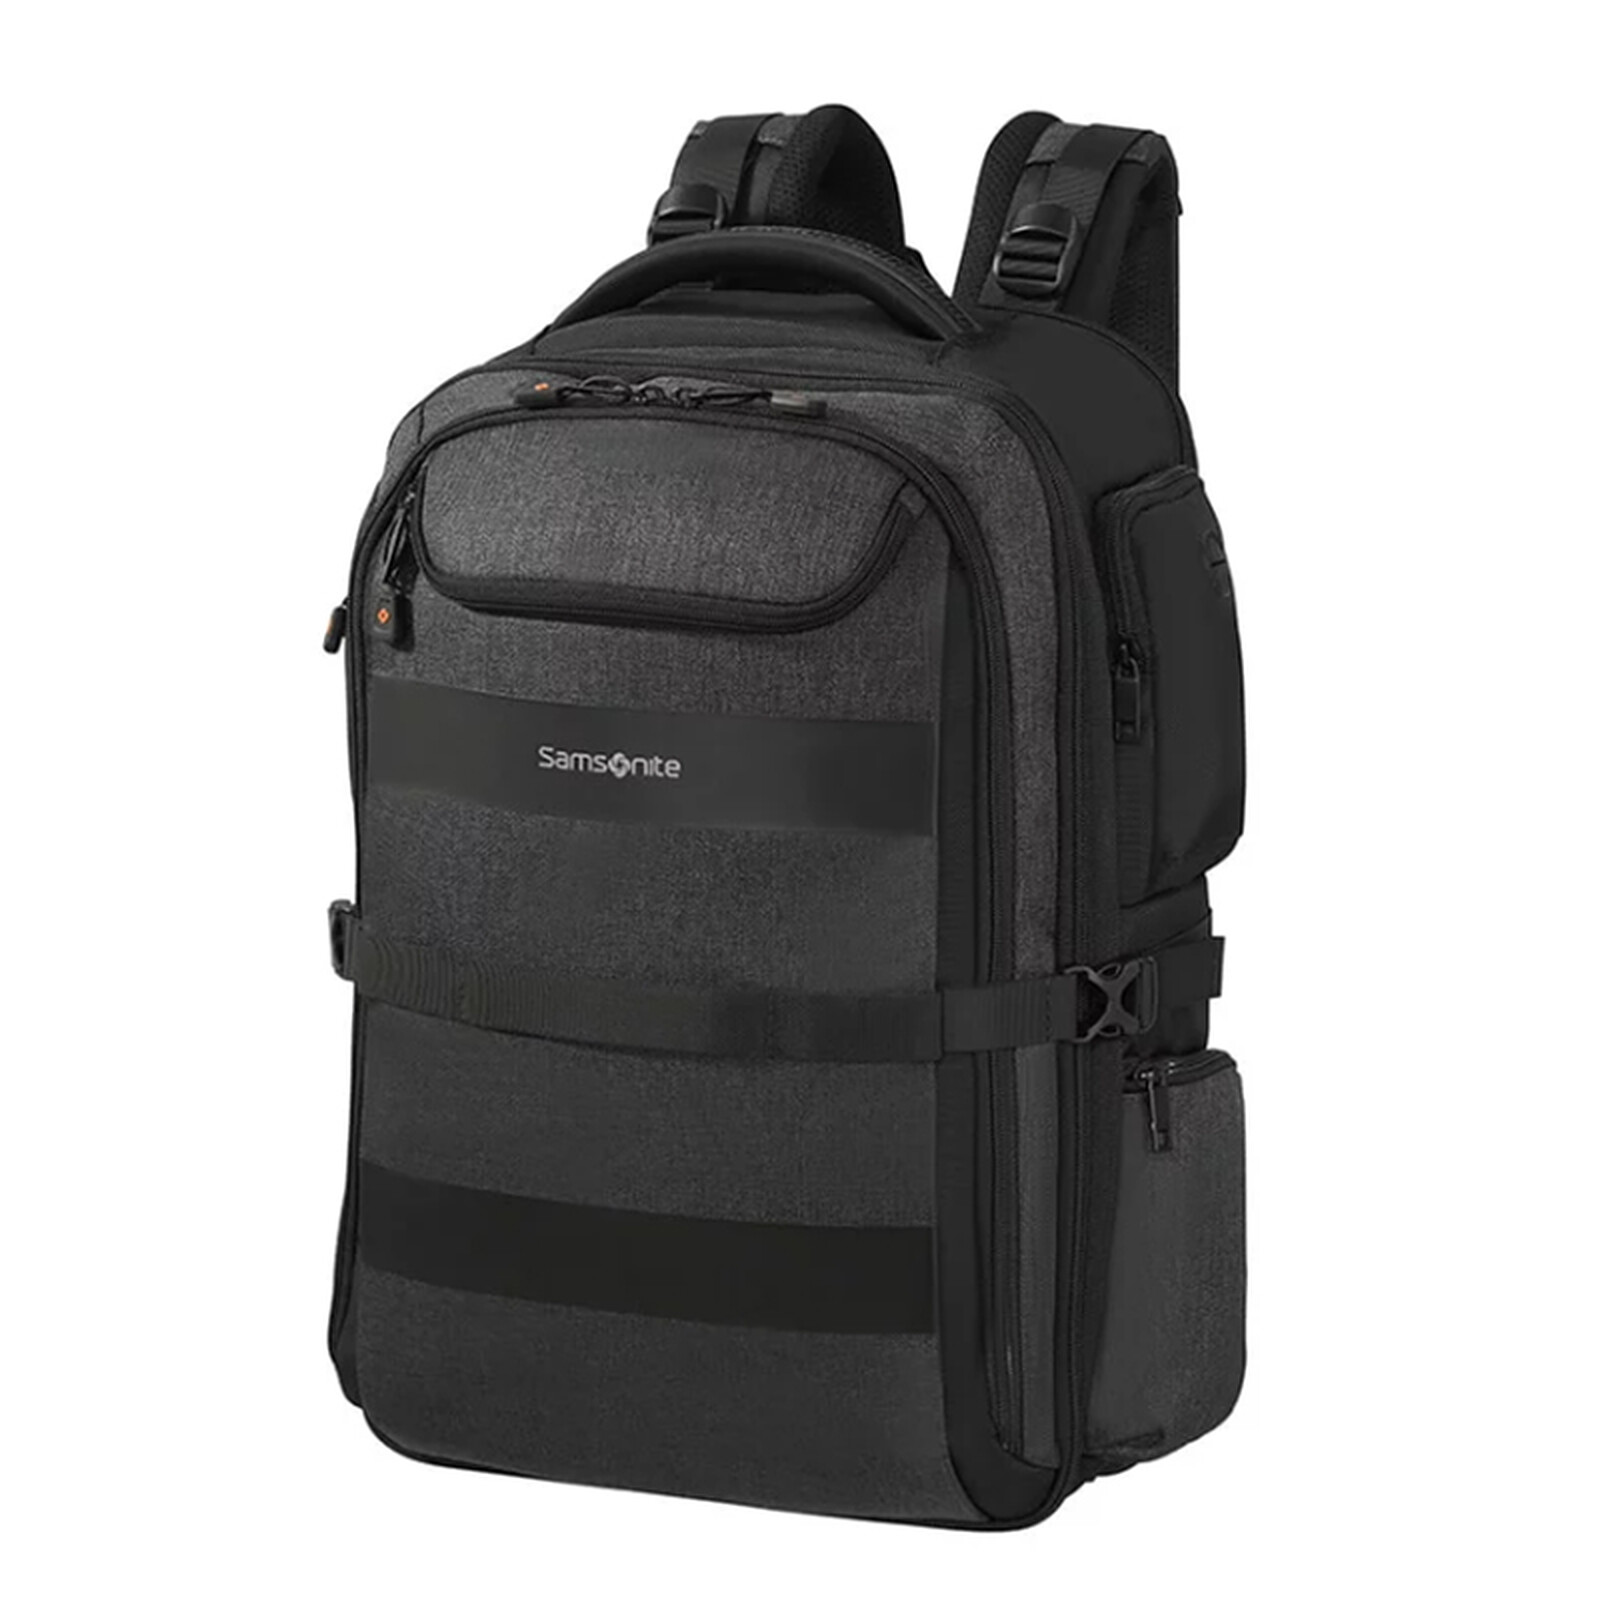 Samsonite Bleisure Backpack 17.3 - Bag, backpack, case - LDLC 3-year ...